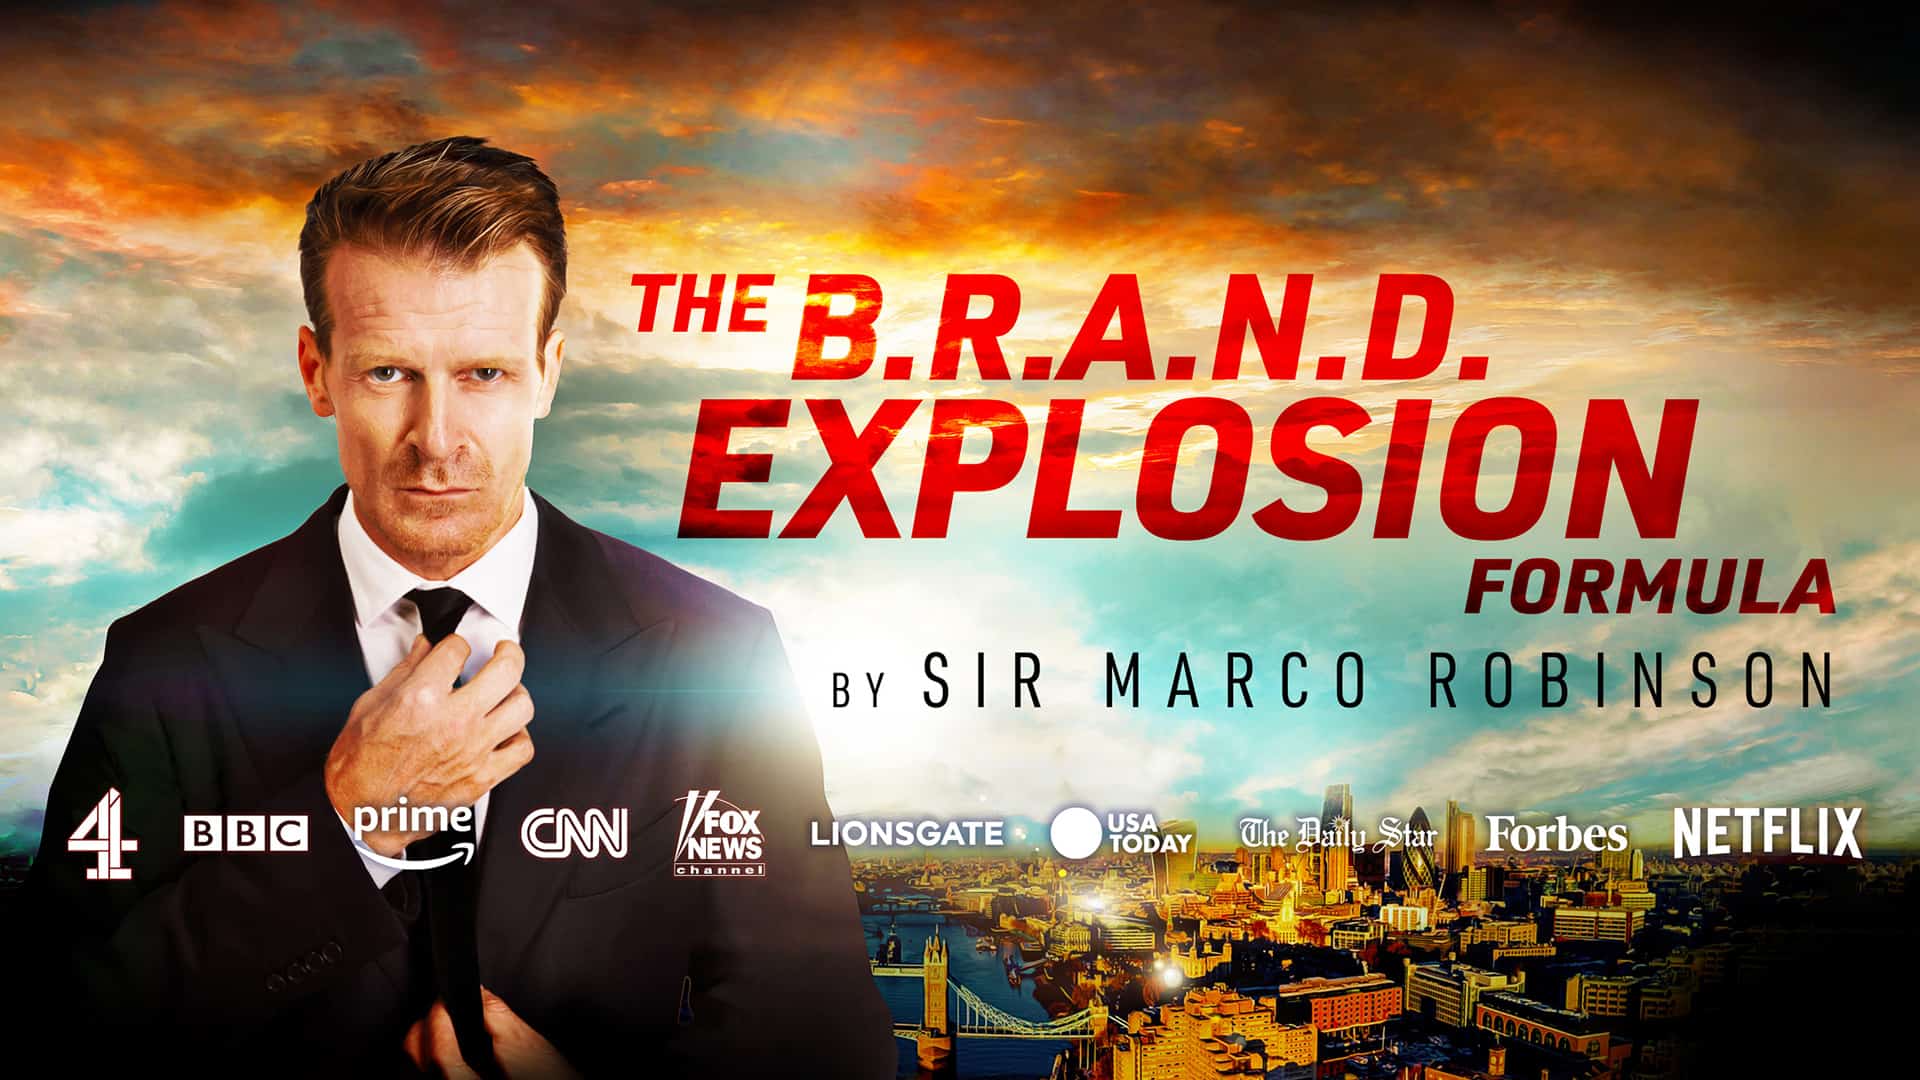 B.R.A.N.D Explosion main header image